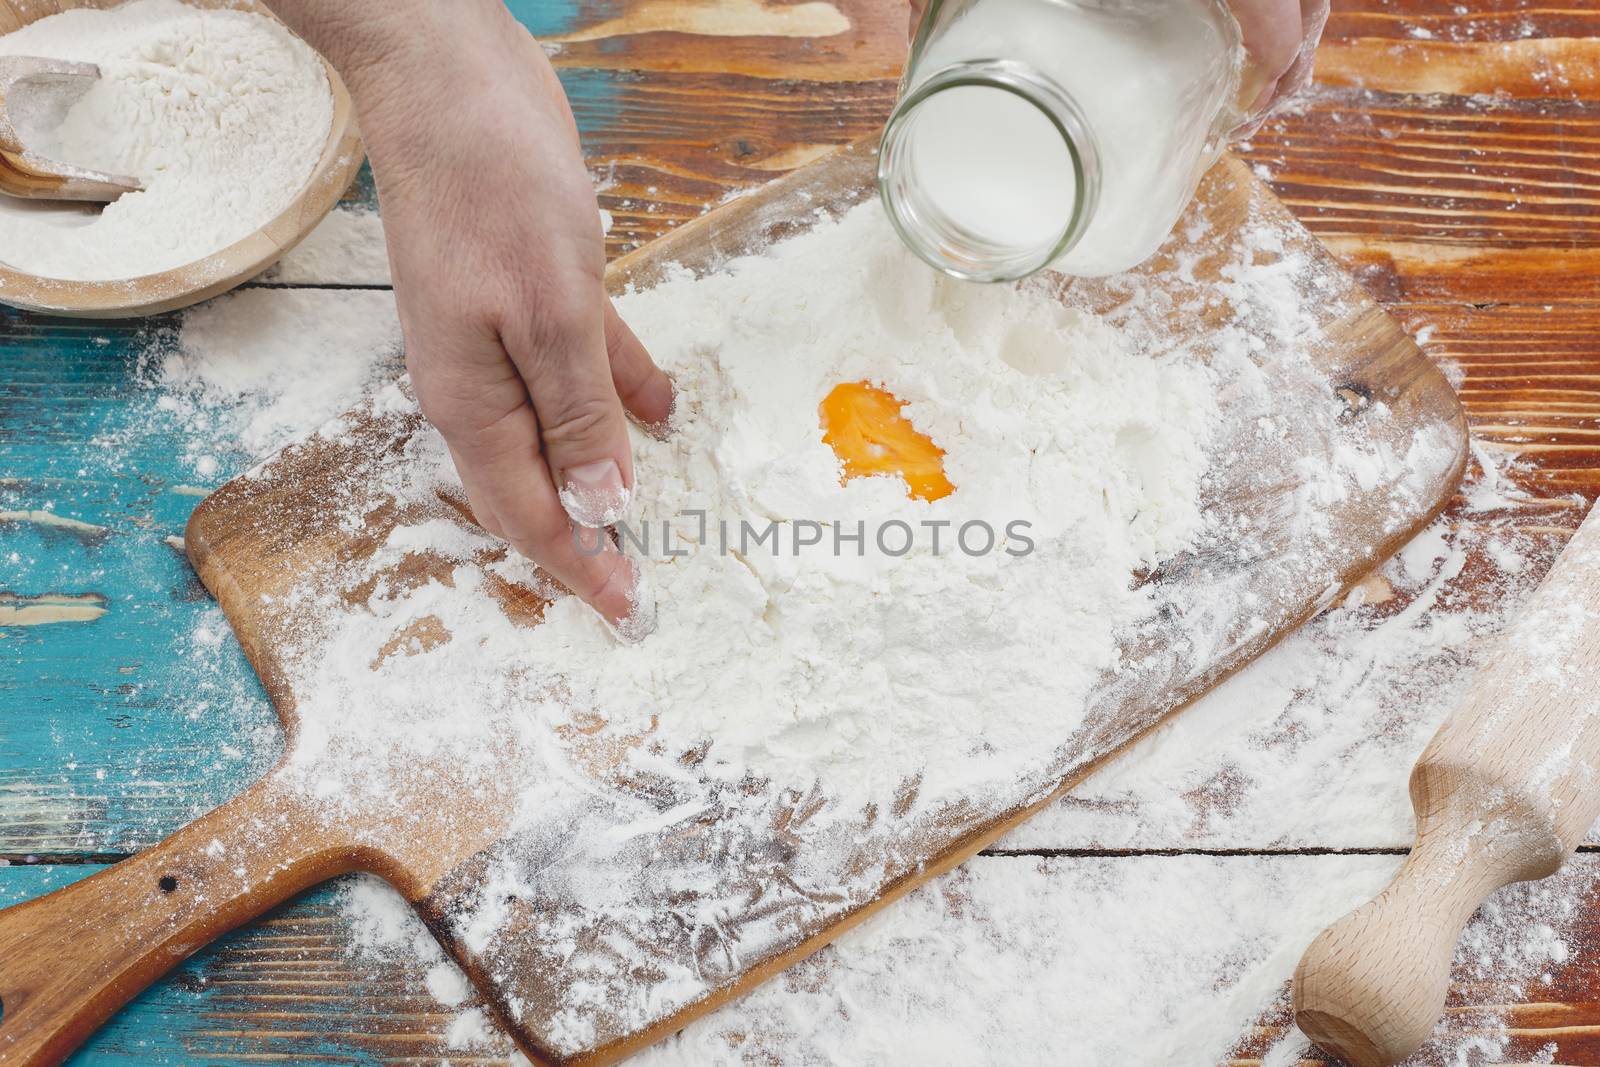 Woman pouring milk into flour as she prepares to bake